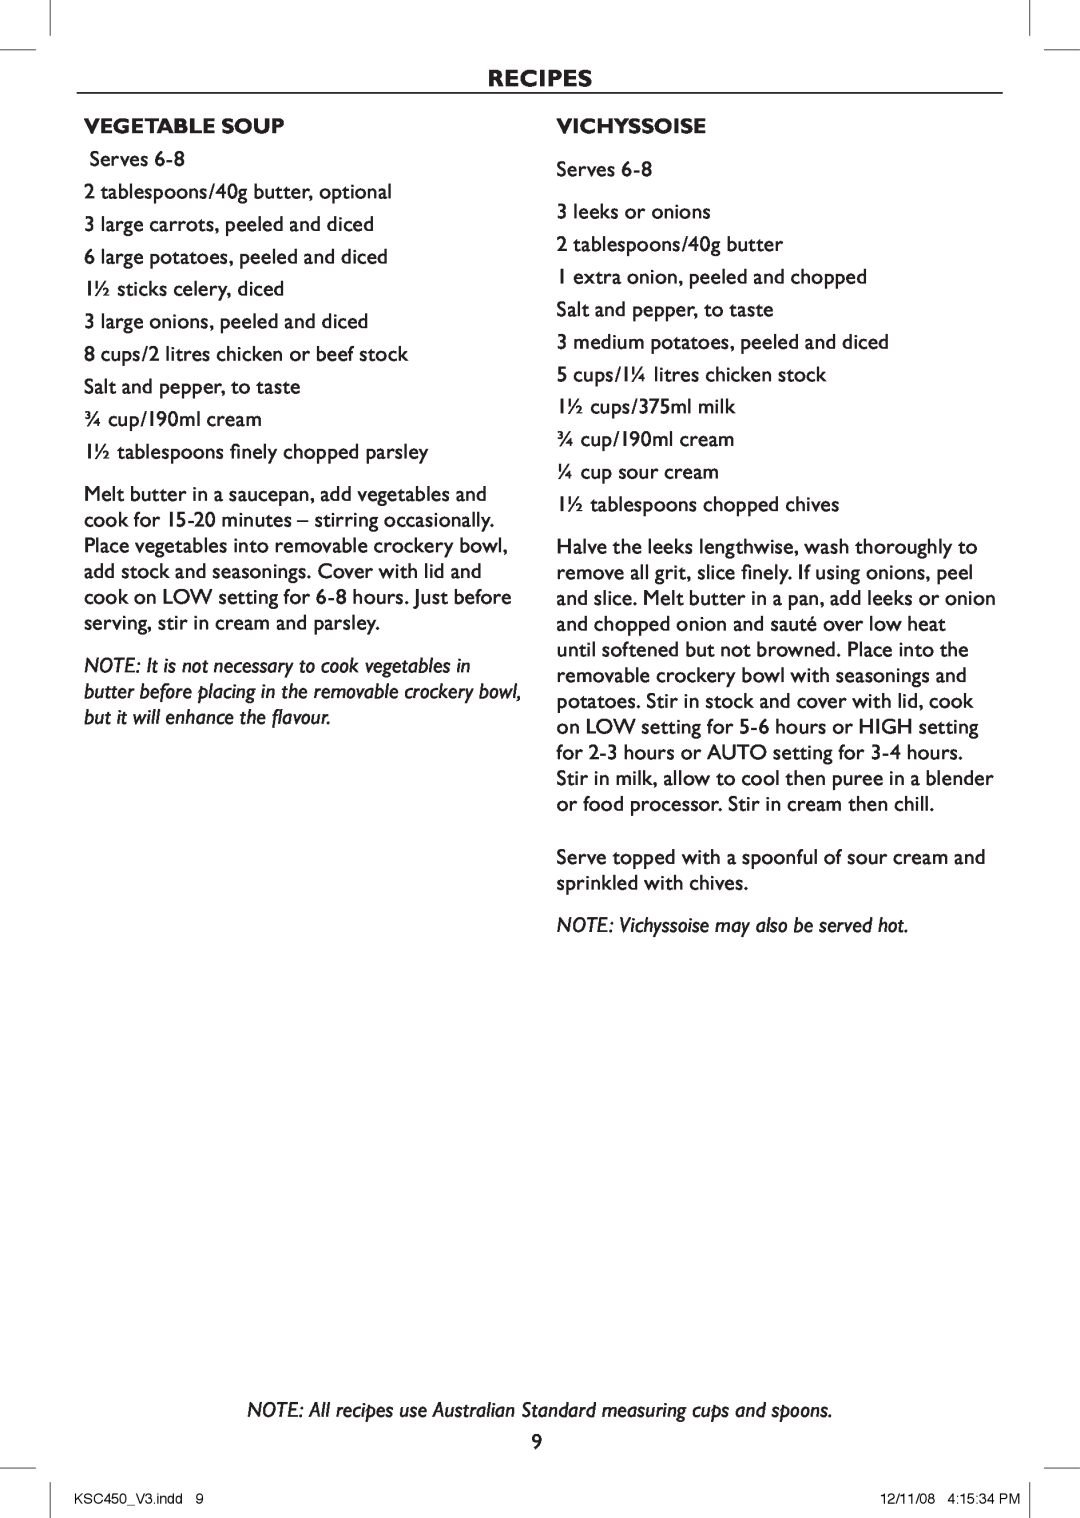 Kambrook KSC450 manual Recipes, Vegetable Soup, Vichyssoise 